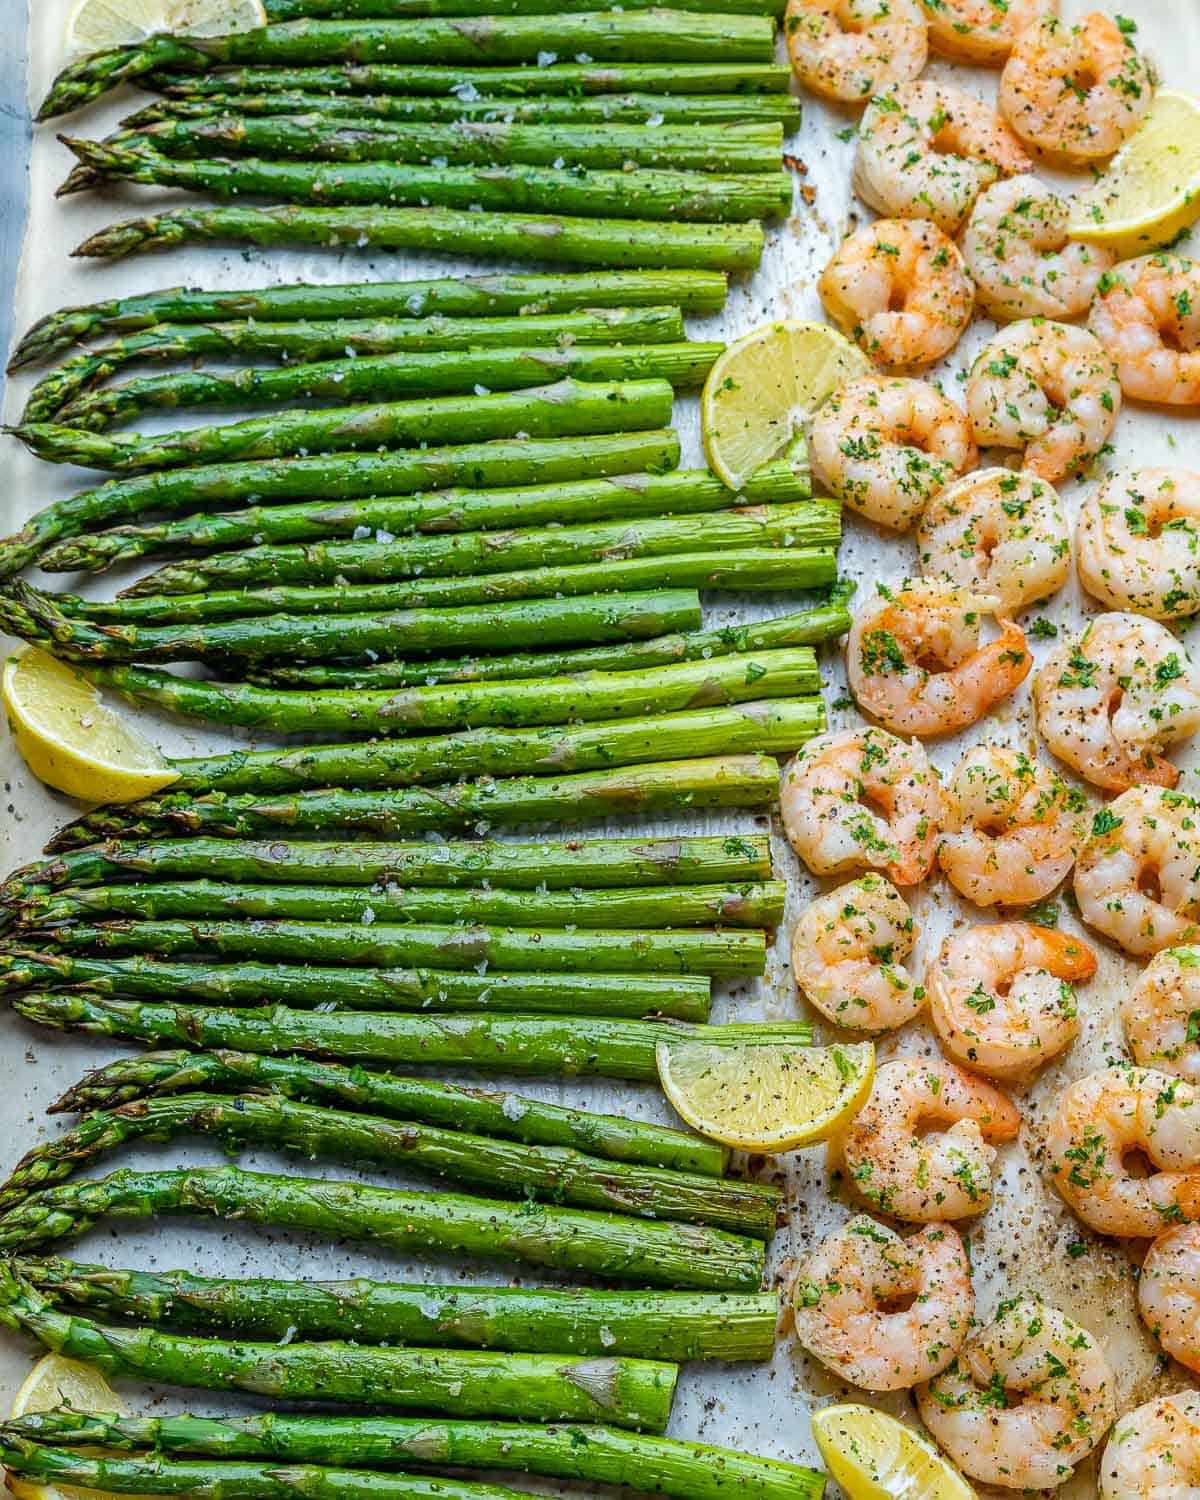 https://healthyfitnessmeals.com/wp-content/uploads/2021/02/One-pan-garlic-shrimp-and-asparagus-7.jpg